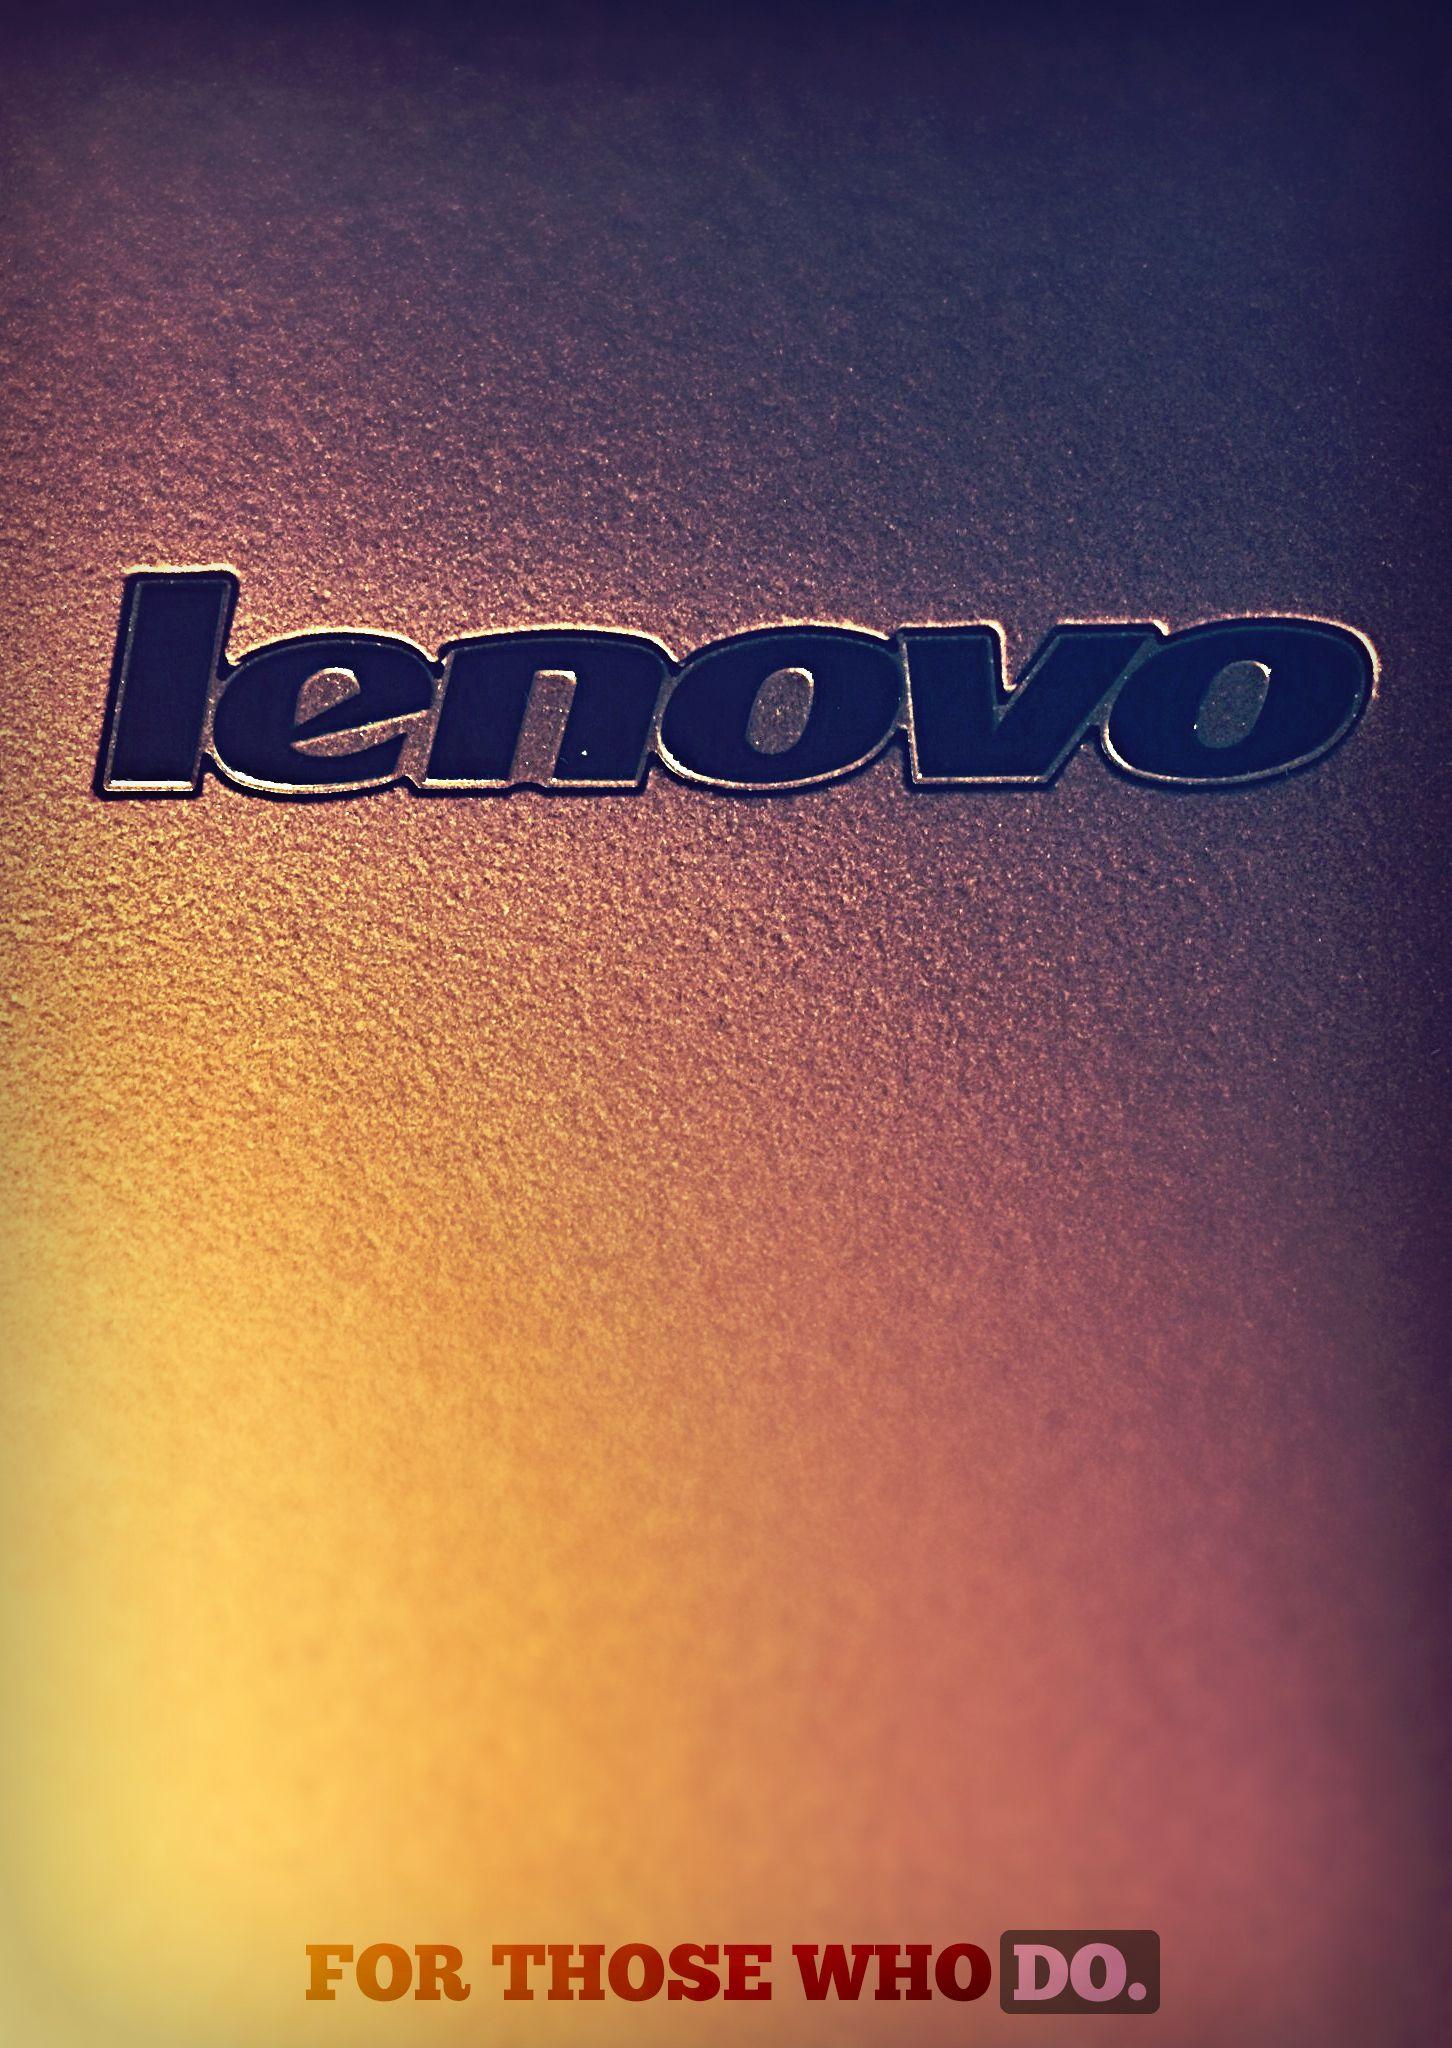 Lenovo Wallpapers 43+